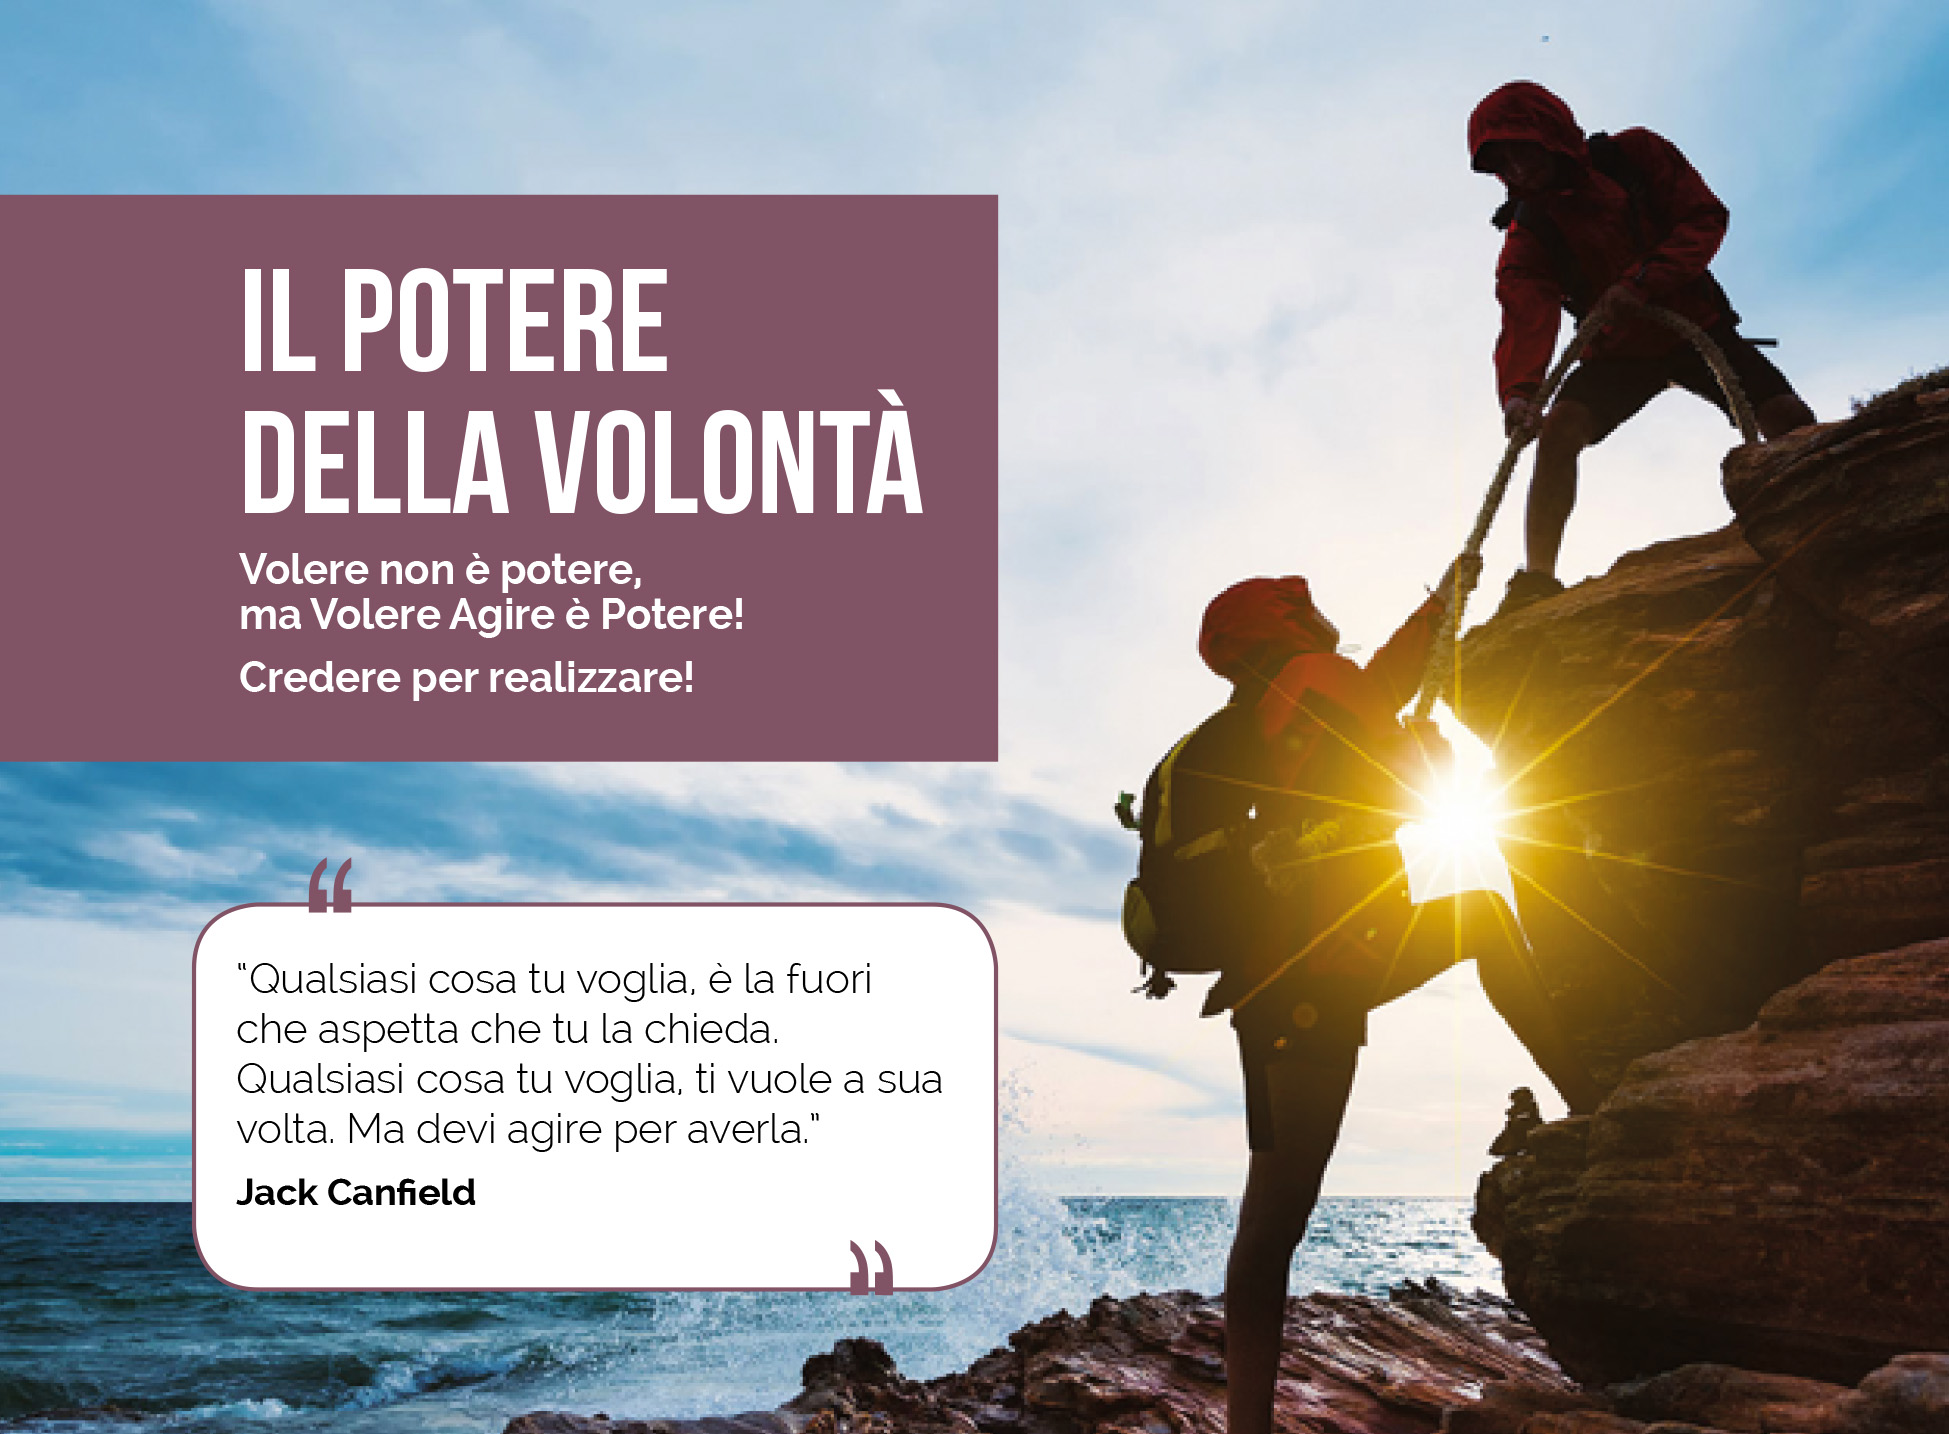 //www.ziomike.it/wp-content/uploads/2021/05/il_potere_della_volonta.jpg